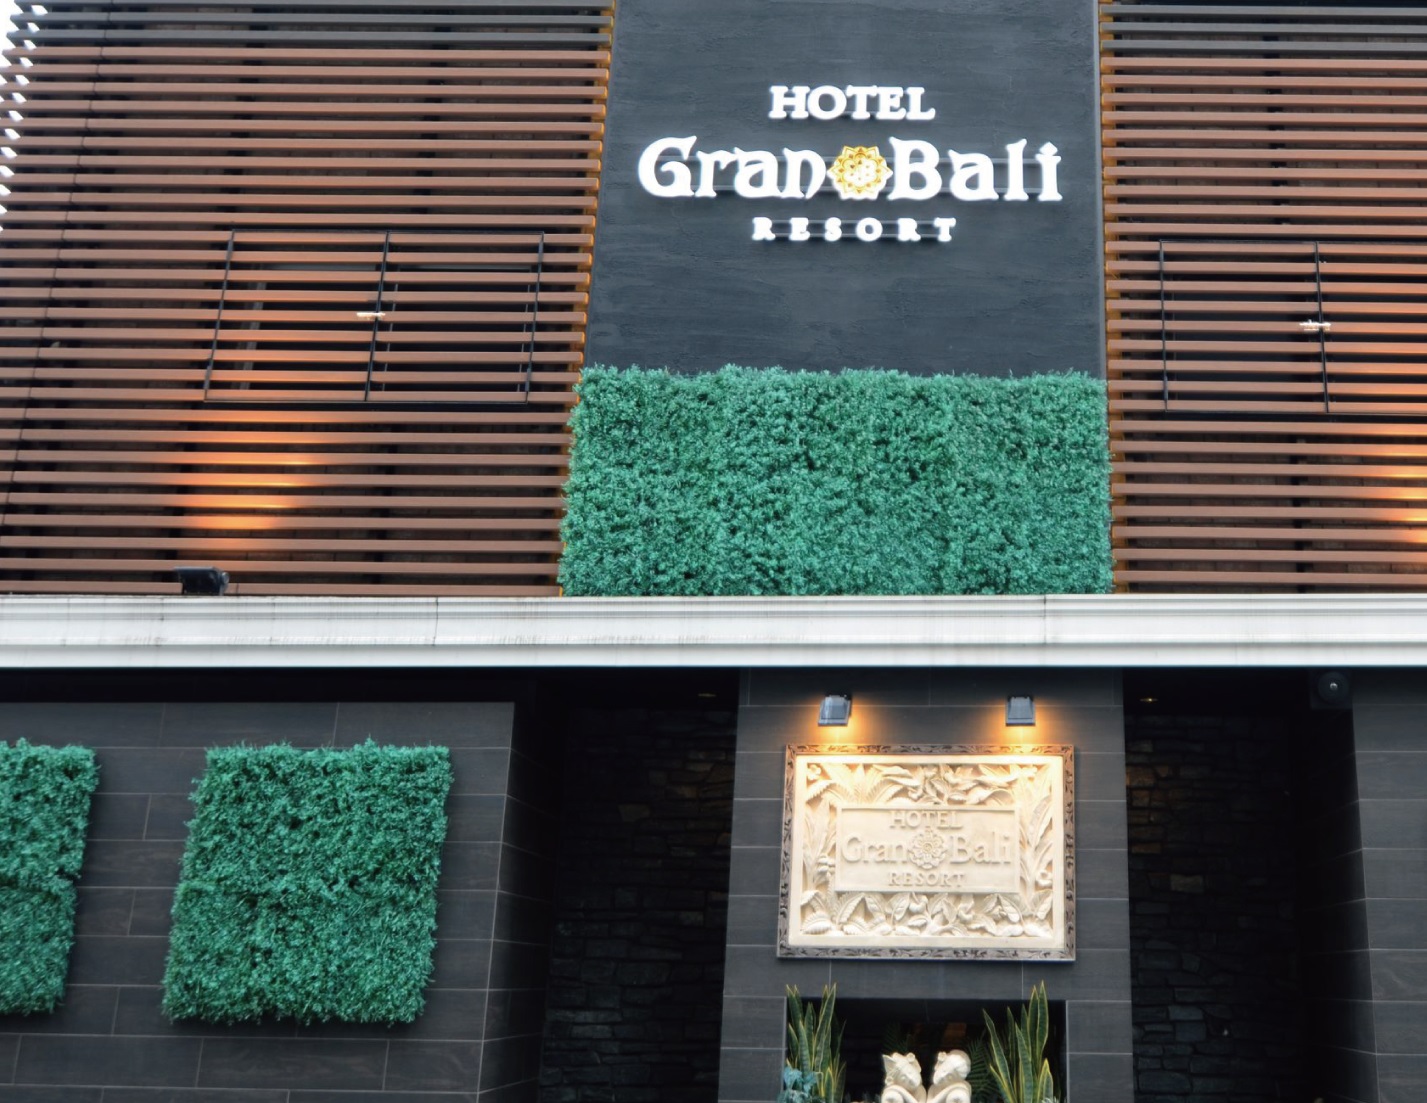 HOTEL Glan Bali RESORT image